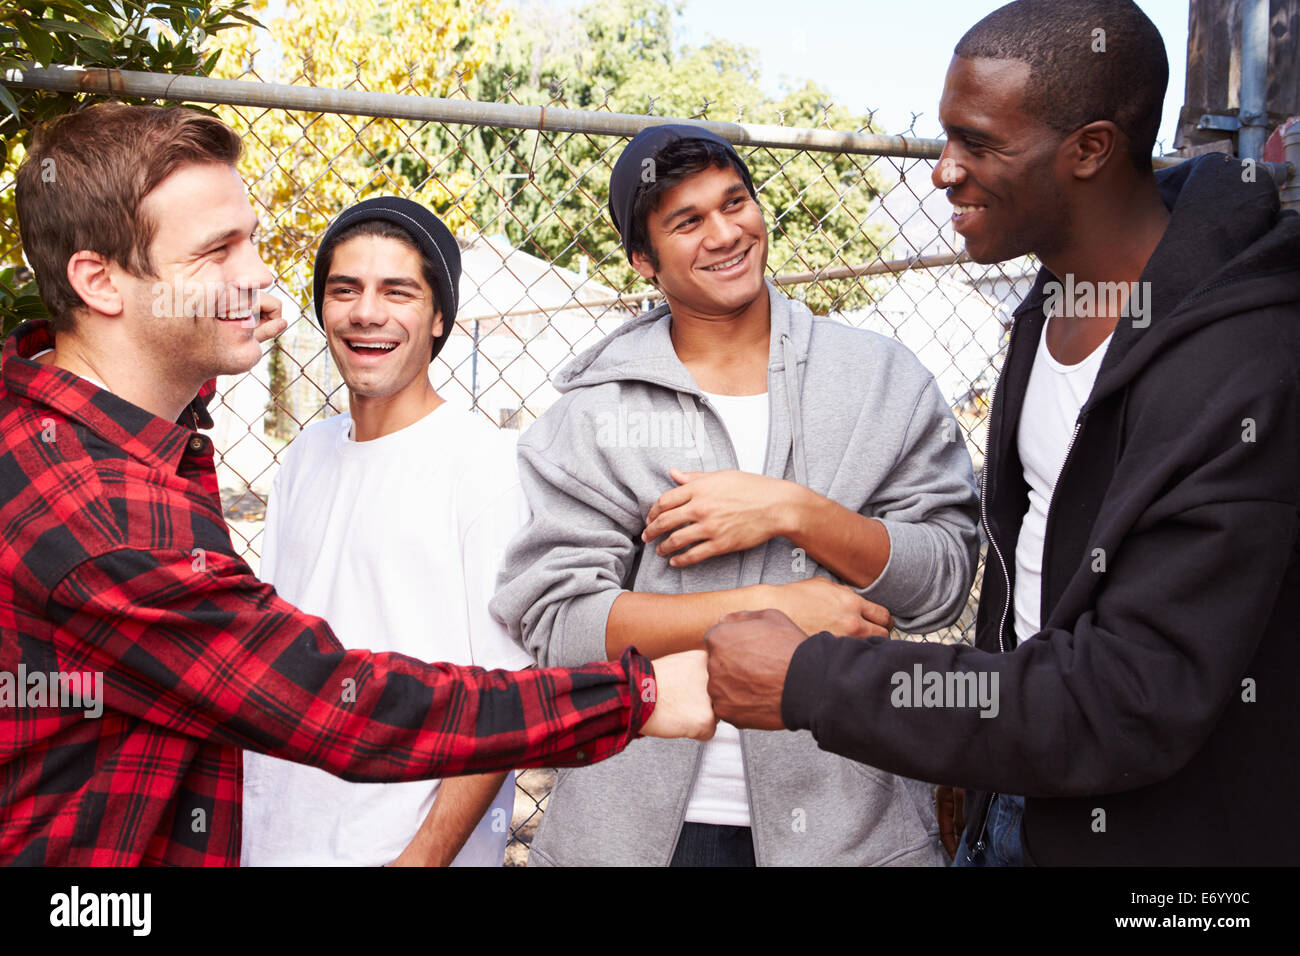 Gruppe junger Männer begrüßen einander im städtischen Umfeld Stockfoto